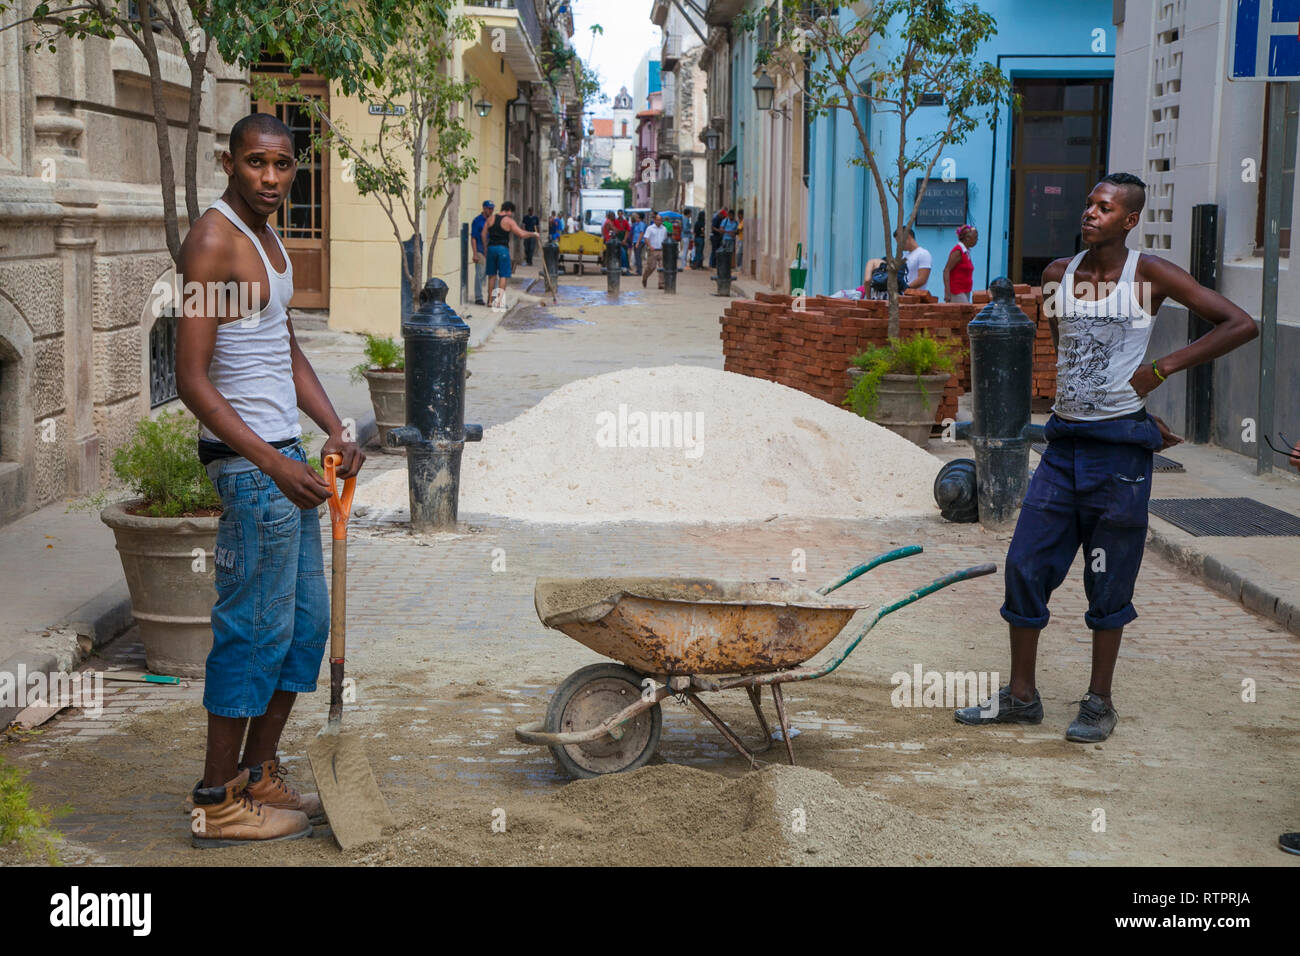 L'Avana, Cuba - 24 Gennaio 2013: una vista delle strade della città con il popolo cubano. Due lavoratori edili pala sabbia in una carriola. Foto Stock